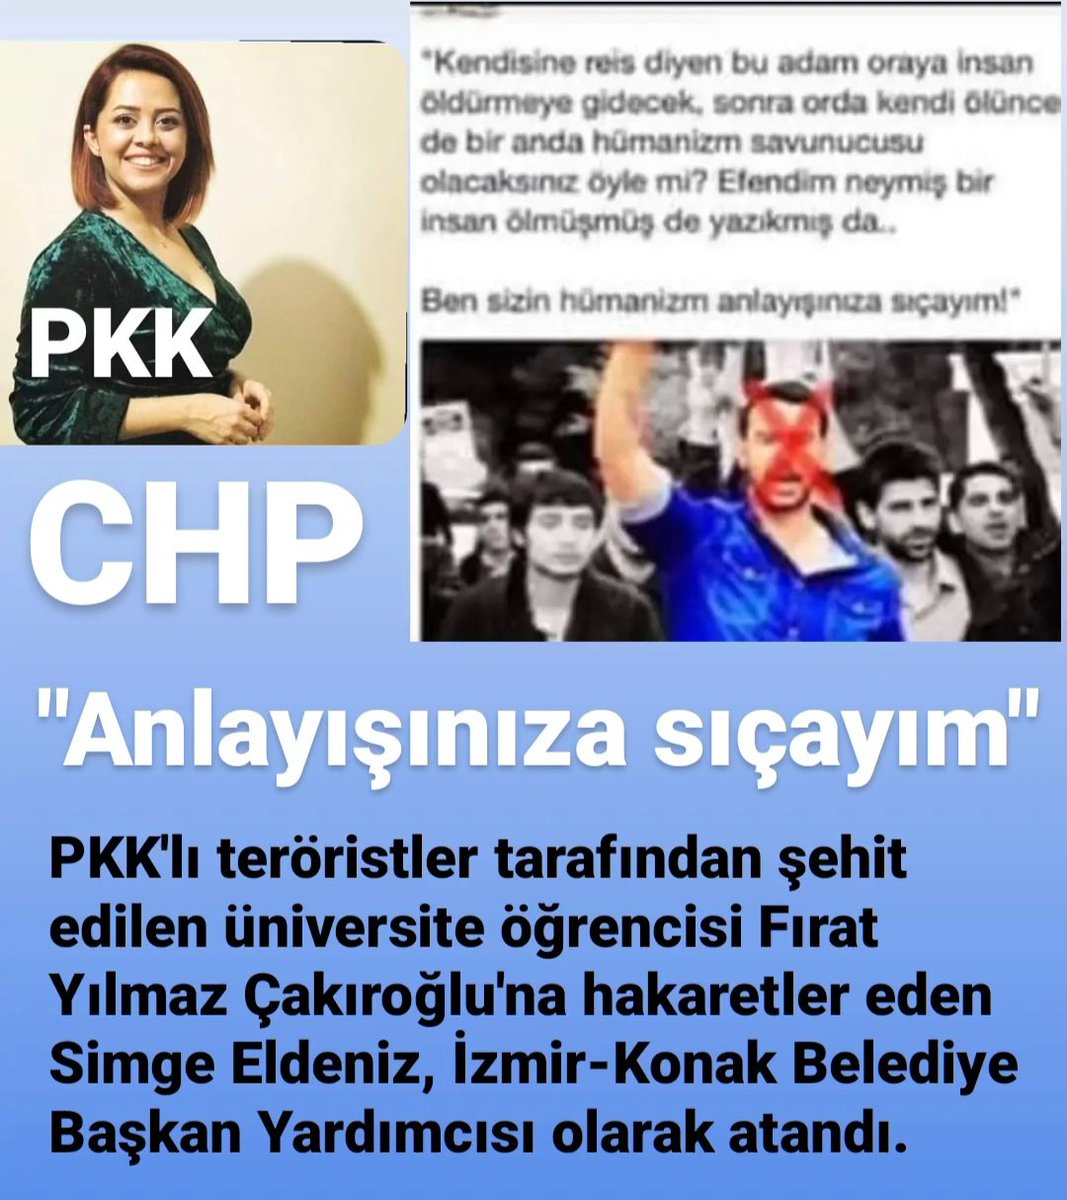 ANLAYIŞINIZA SIÇAYIM
@SimgEeldeniz @kilicdarogluk

@benguturktv
@Ulku_Ocaklari @dbdevletbahceli
@MHP_Bilgi @TC_icisleri @ikalin1 

PKK'lı teröristler tarafından şehit edilen Fırat Yılmaz Çakıroğlu'na hakaretler eden Simge Eldeniz İzmir-Konak Belediye Başkan Yardımcısı oldu.